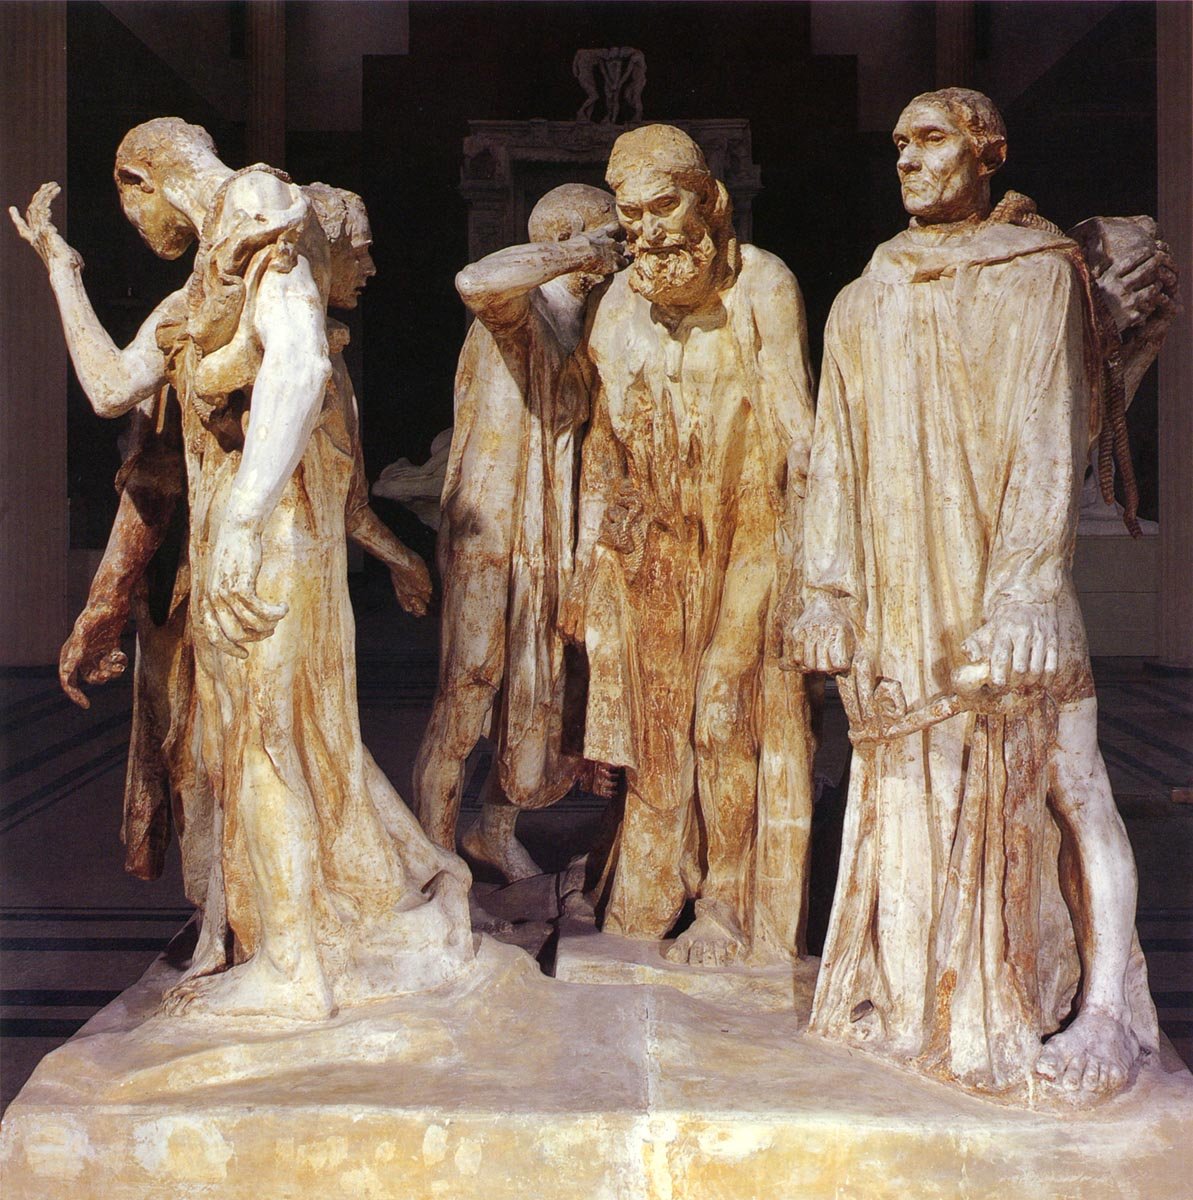 法国杰出雕塑家:奥古斯特·罗丹(Auguste Rodin)